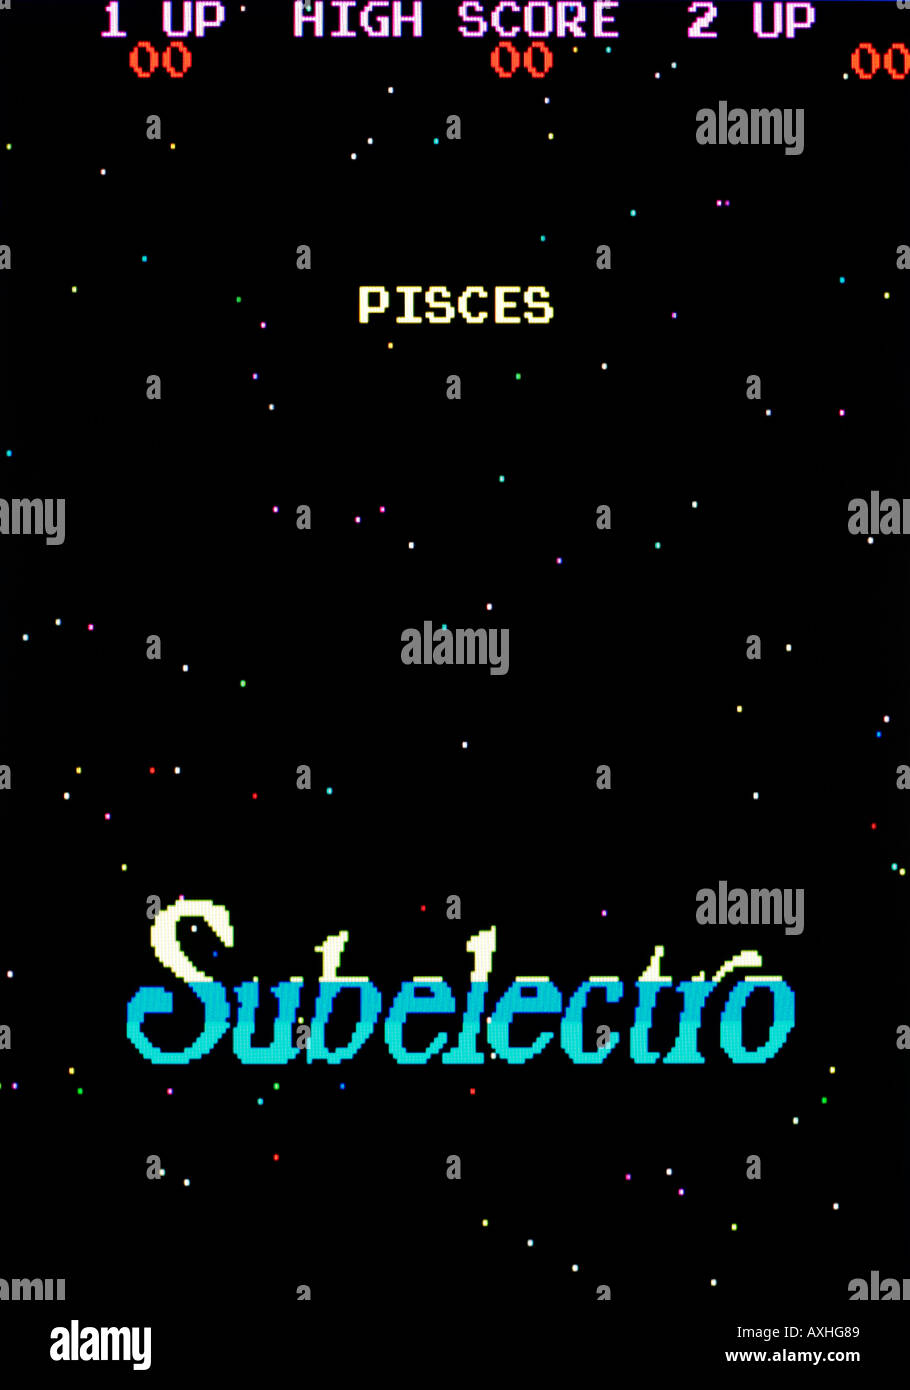 Pesci Subelectro 1982 Vintage videogioco arcade di screen shot - solo uso editoriale Foto Stock